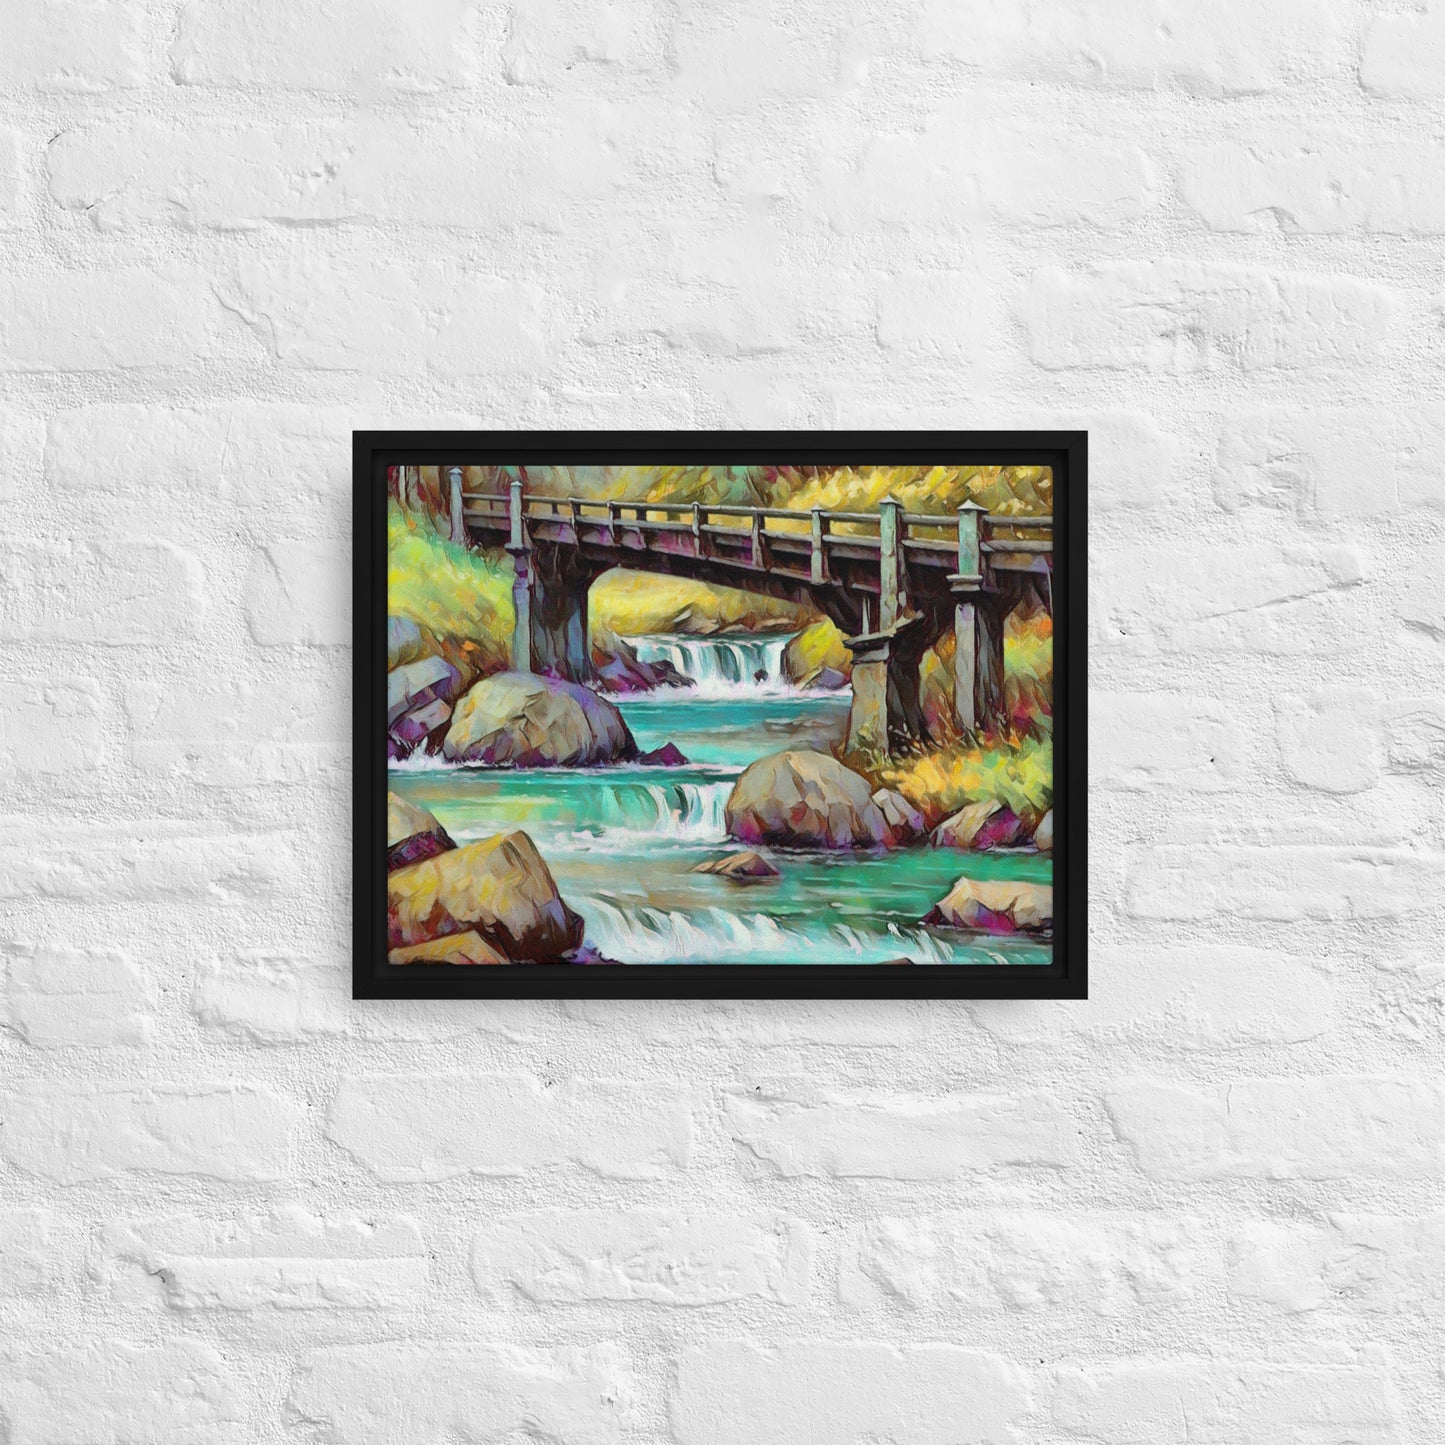 Oregon Bridge - Digital Art - Framed canvas - FREE SHIPPING